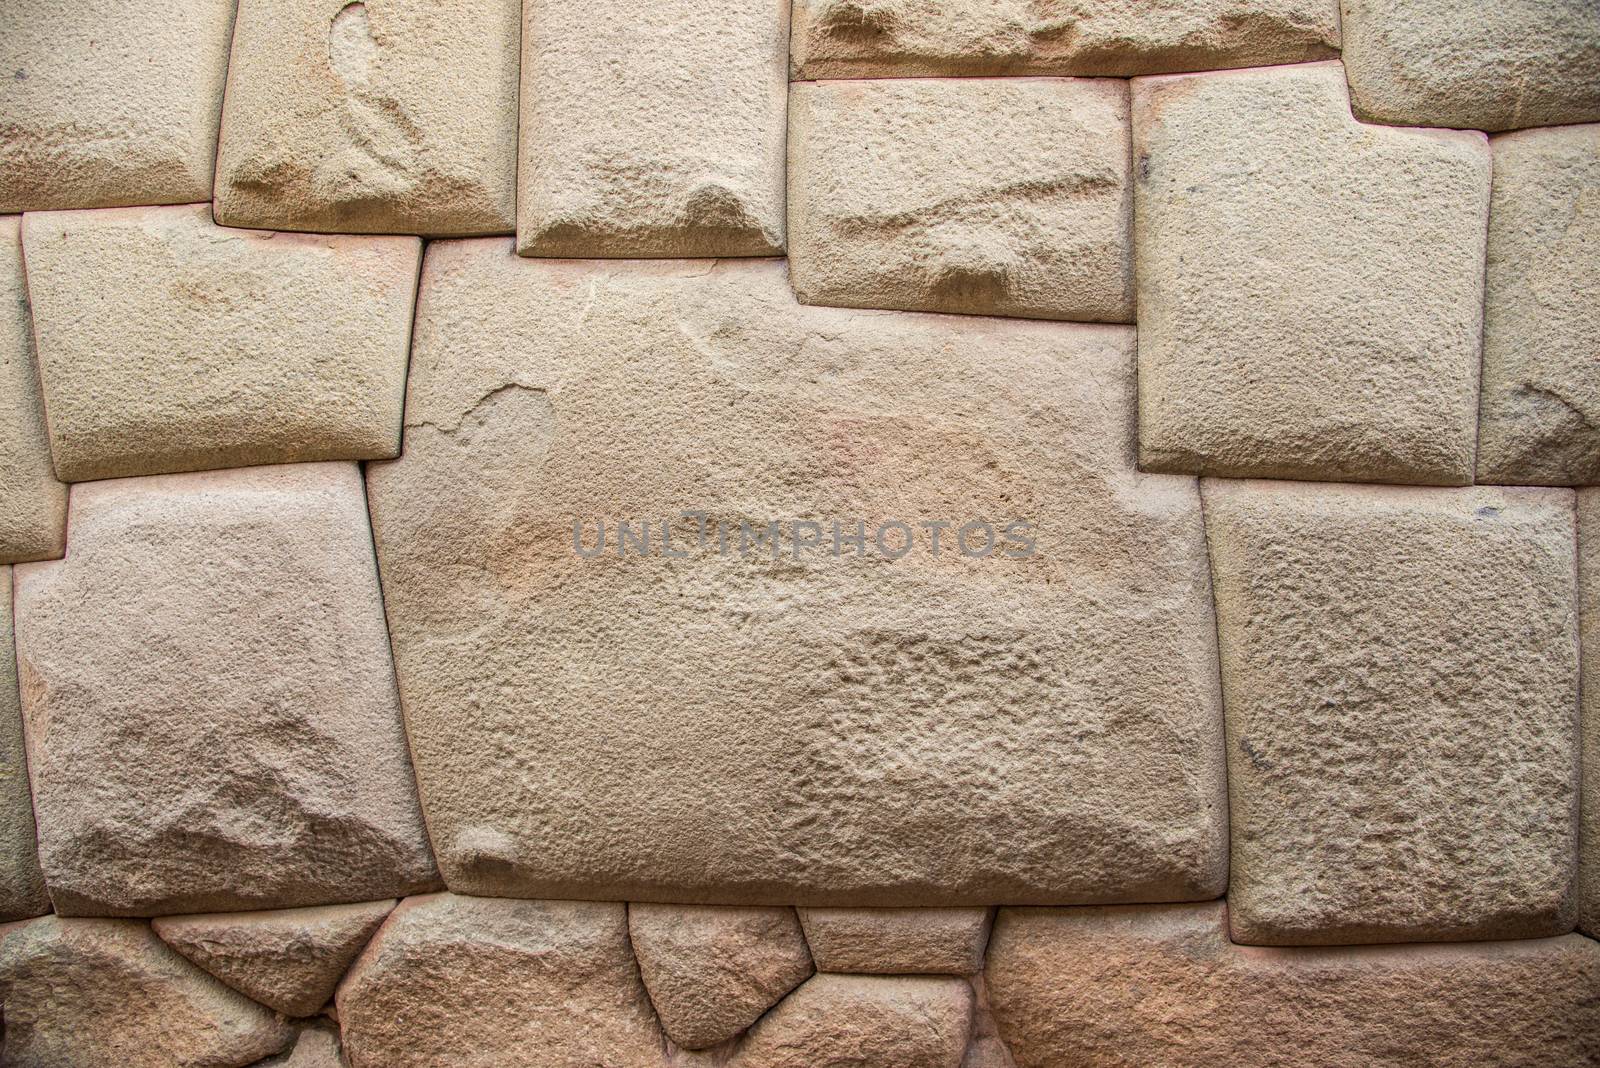 Inca Stone of 12 Angles in Cuzco Peru.